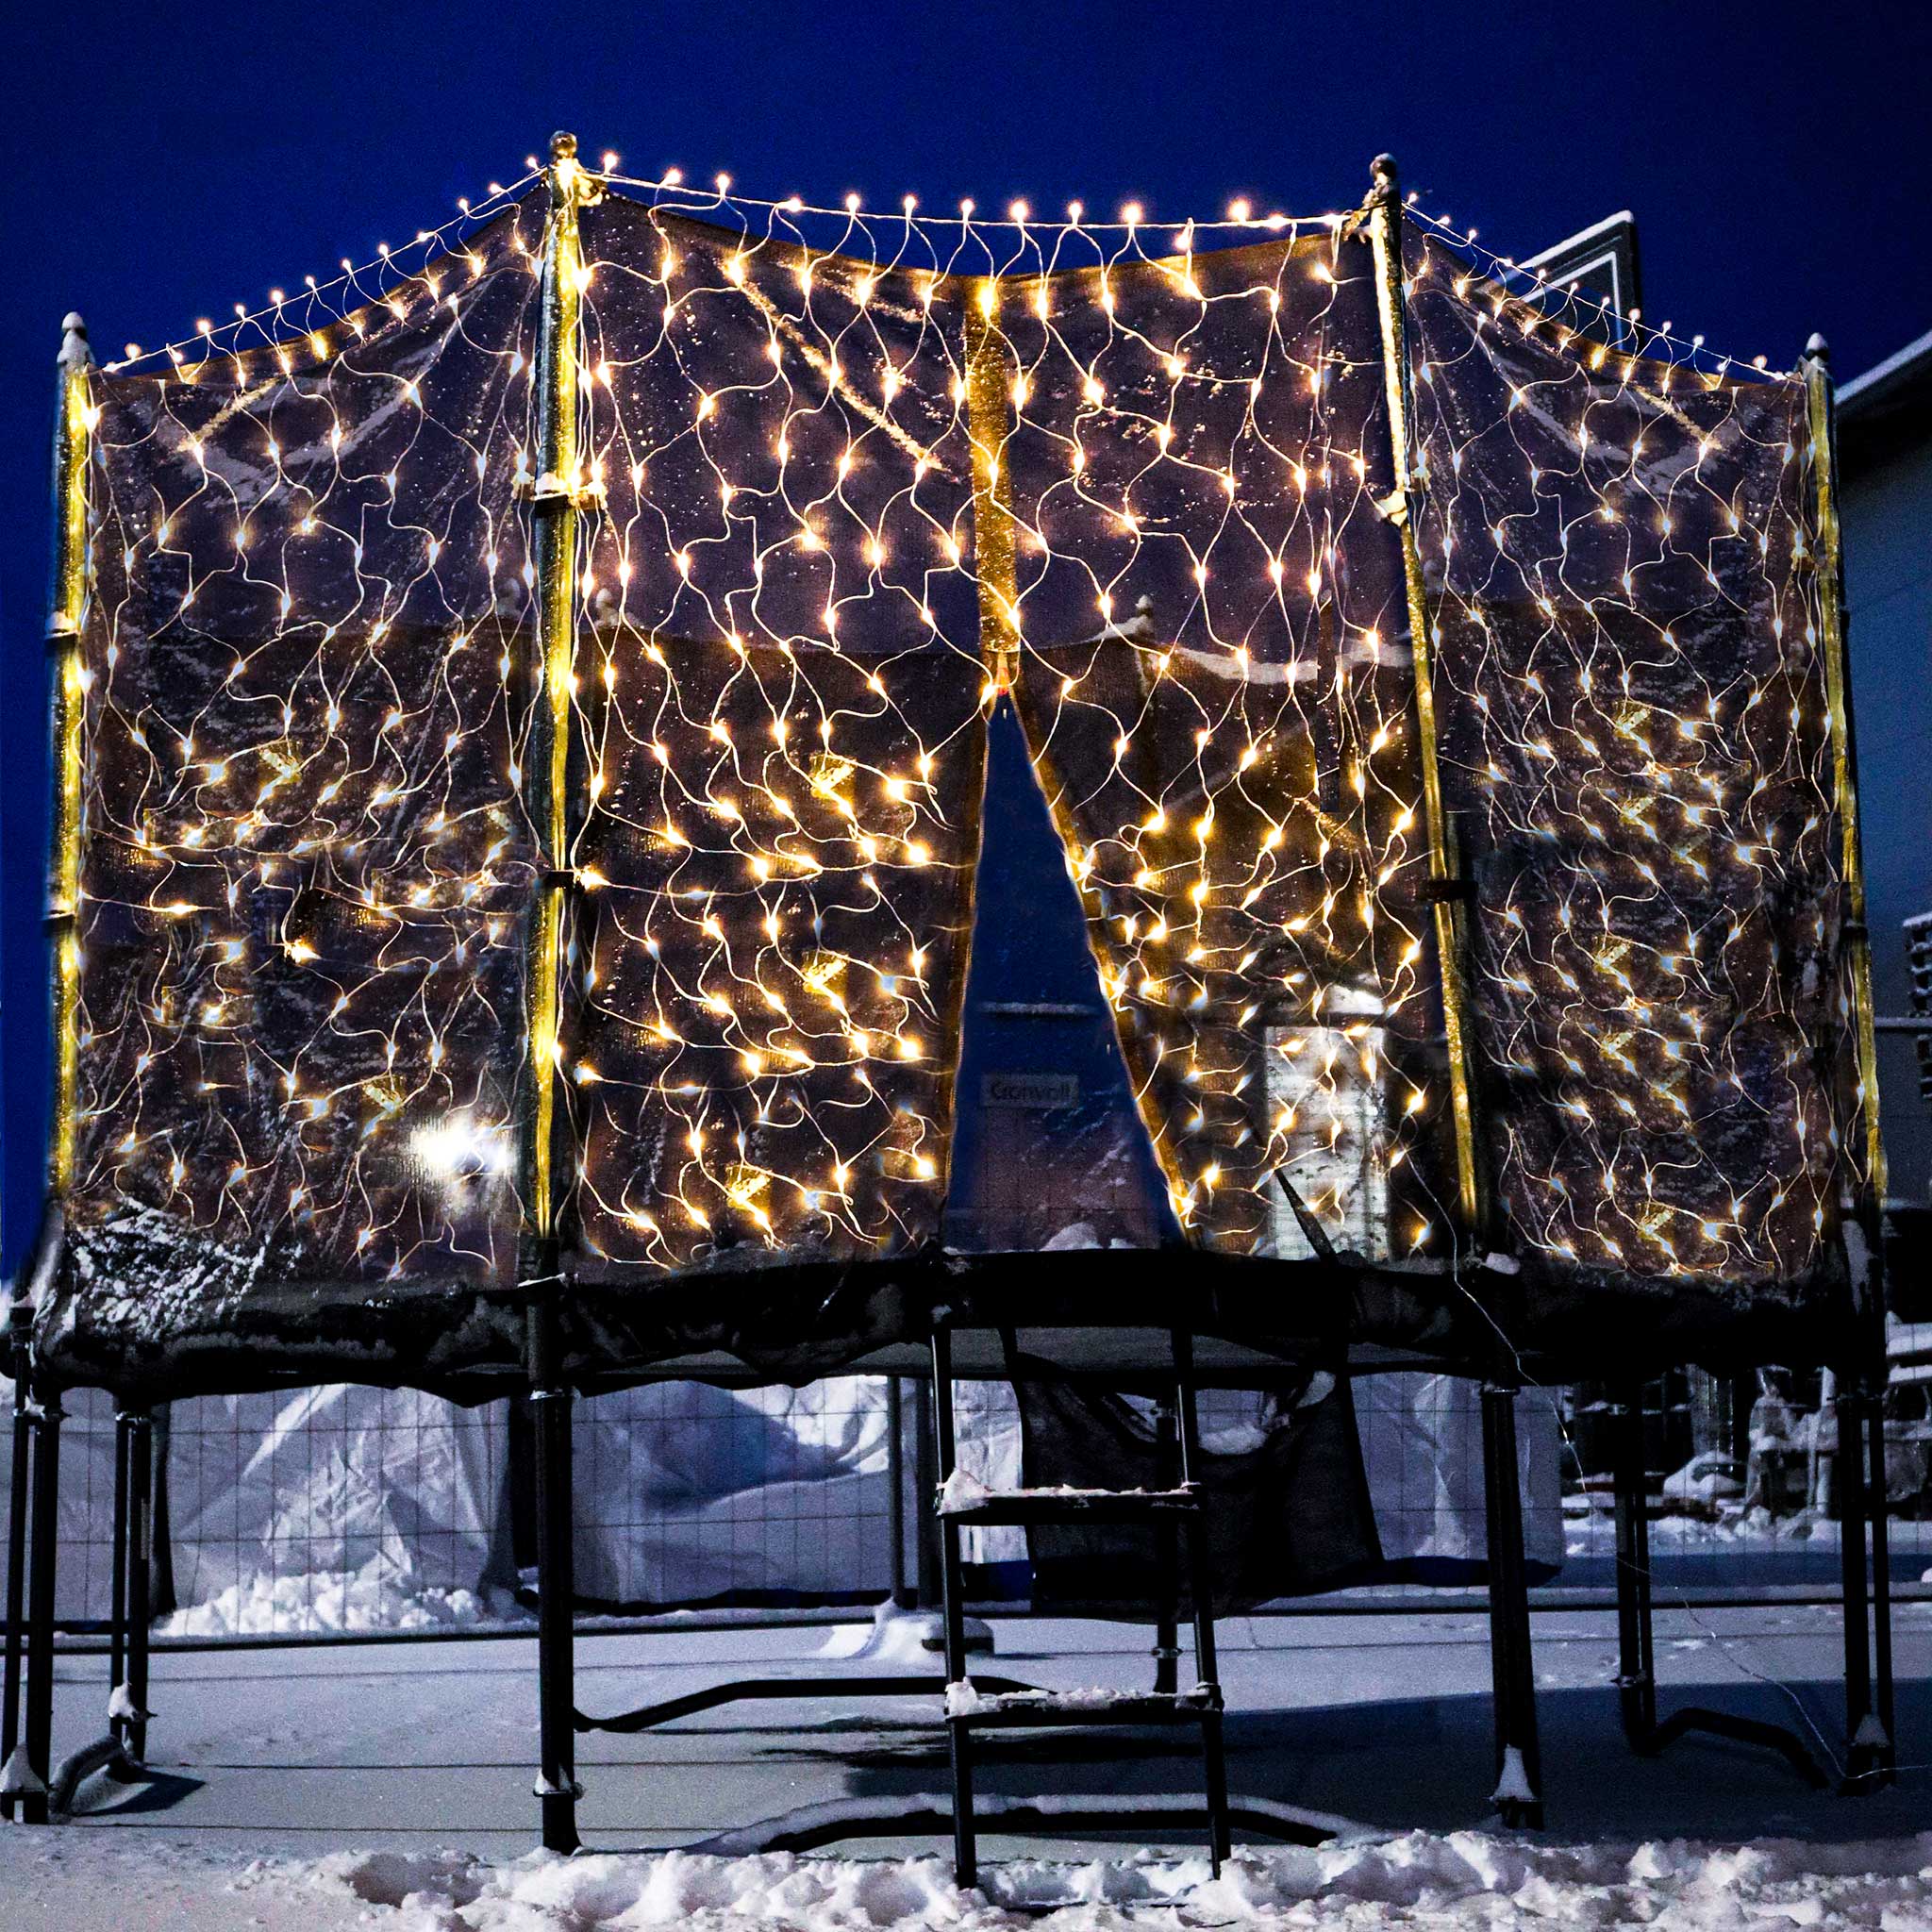 Jouluvaloin koristeltu trampoliini talvi-illassa